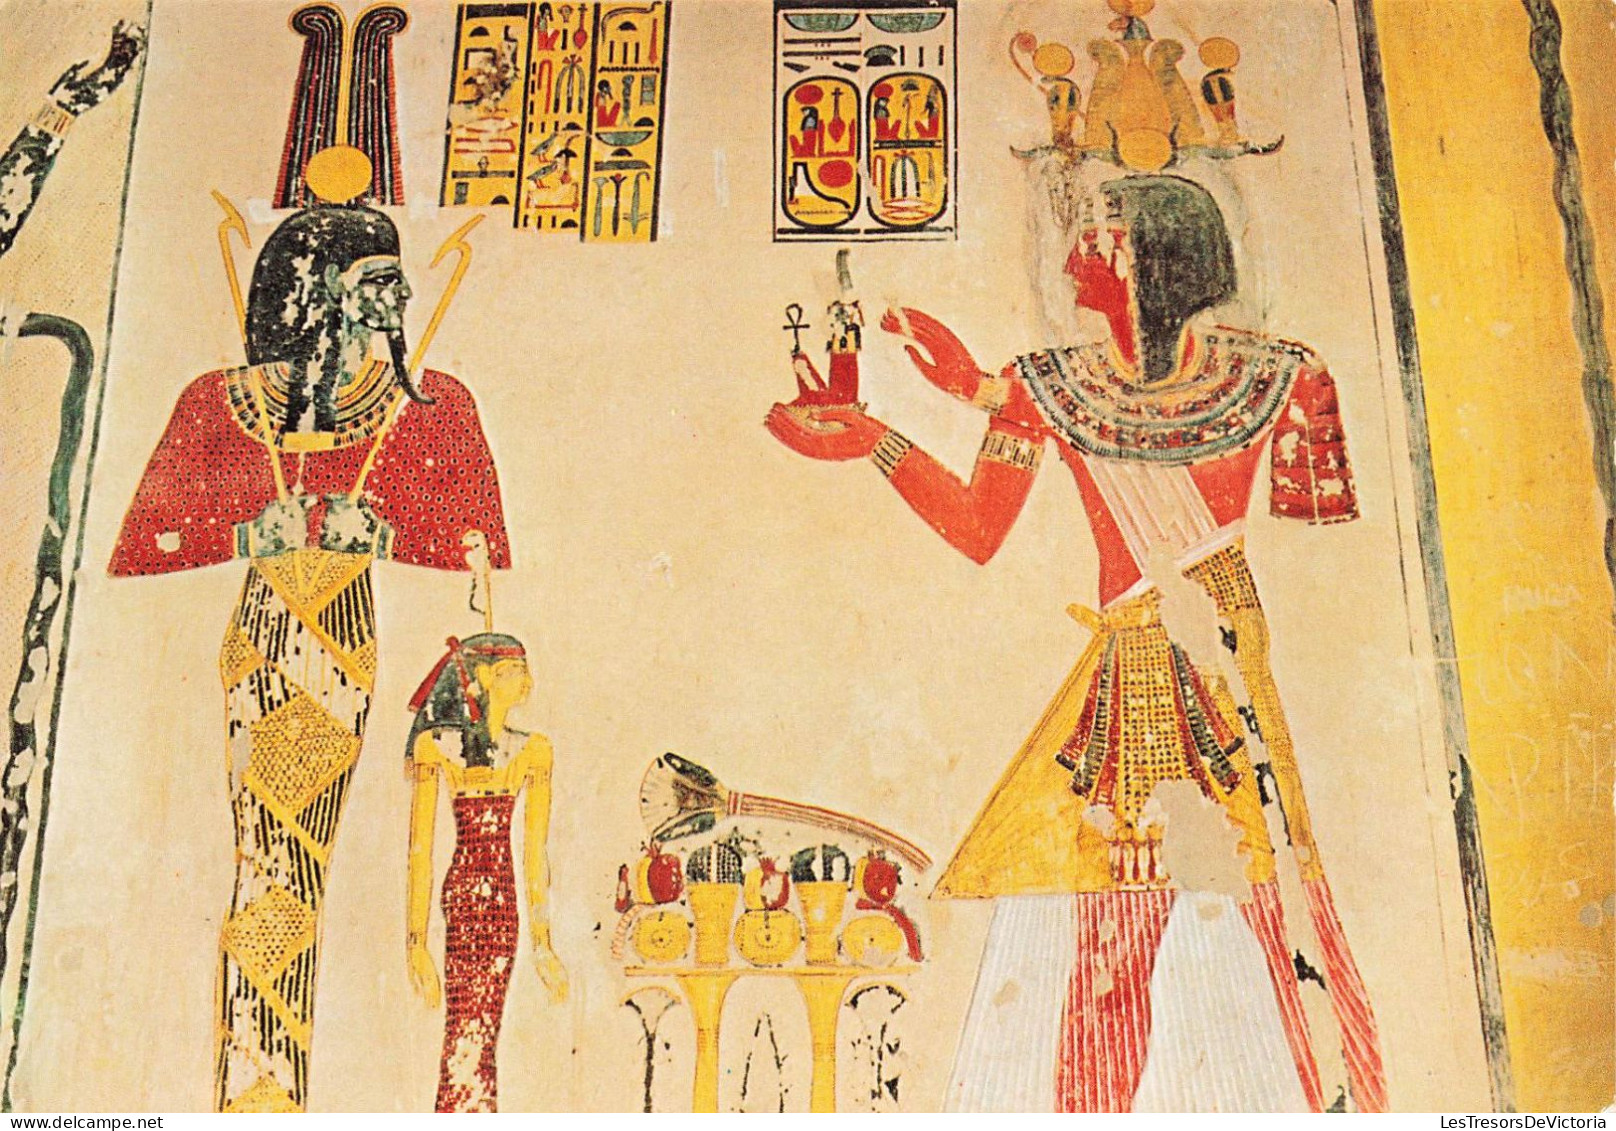 EGYPTE - Thèbes - Vallée Des Rois - Peintures Dans Le Tombeau De Ramses IX - Carte Postale - Sonstige & Ohne Zuordnung